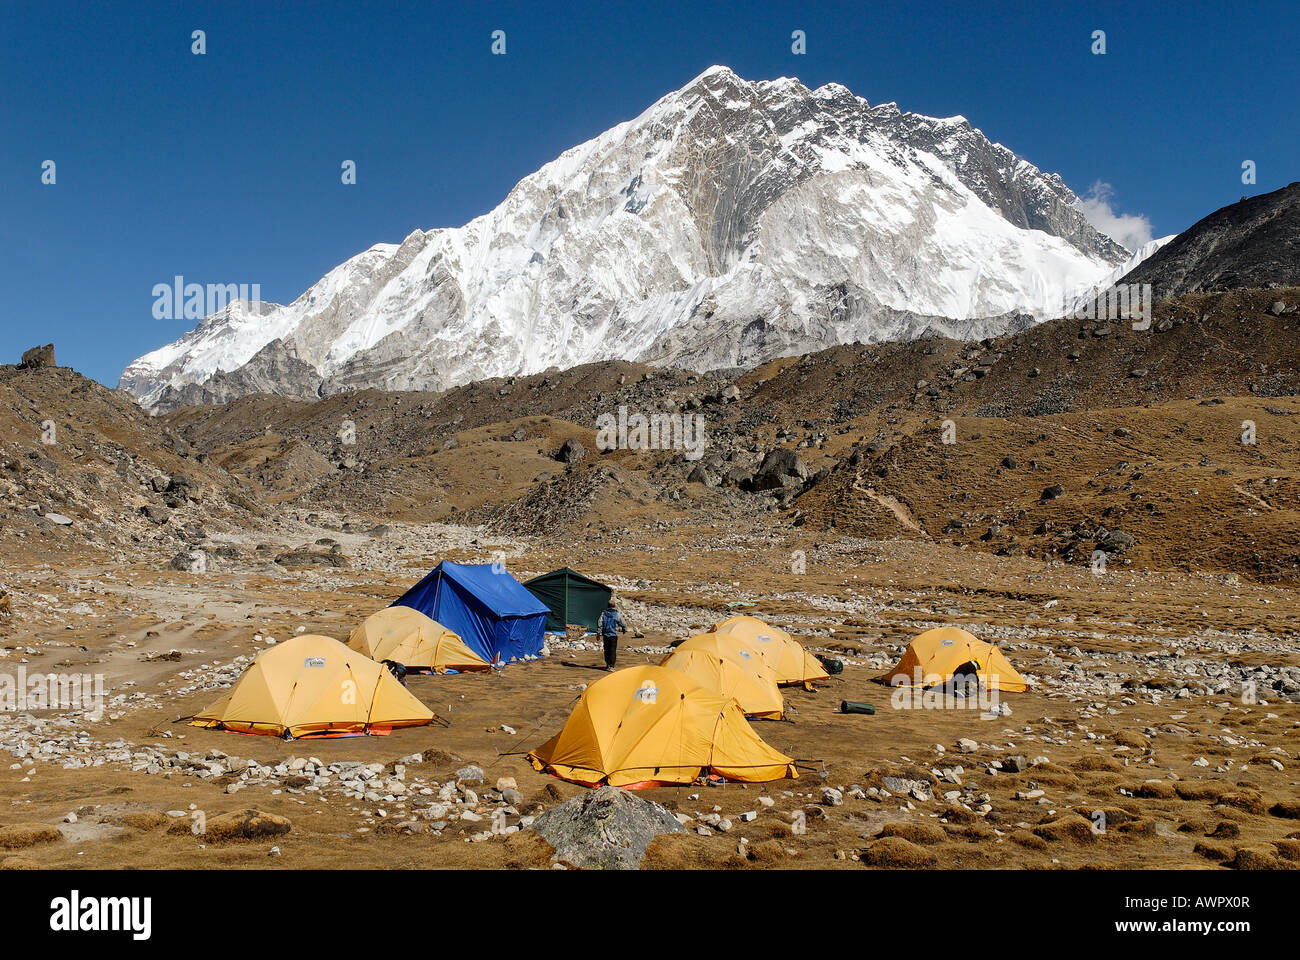 Tent camp at the Sherpa village of Lobuche with Nuptse (7861), Sagarmatha National Park, Khumbu Himal, Nepal Stock Photo